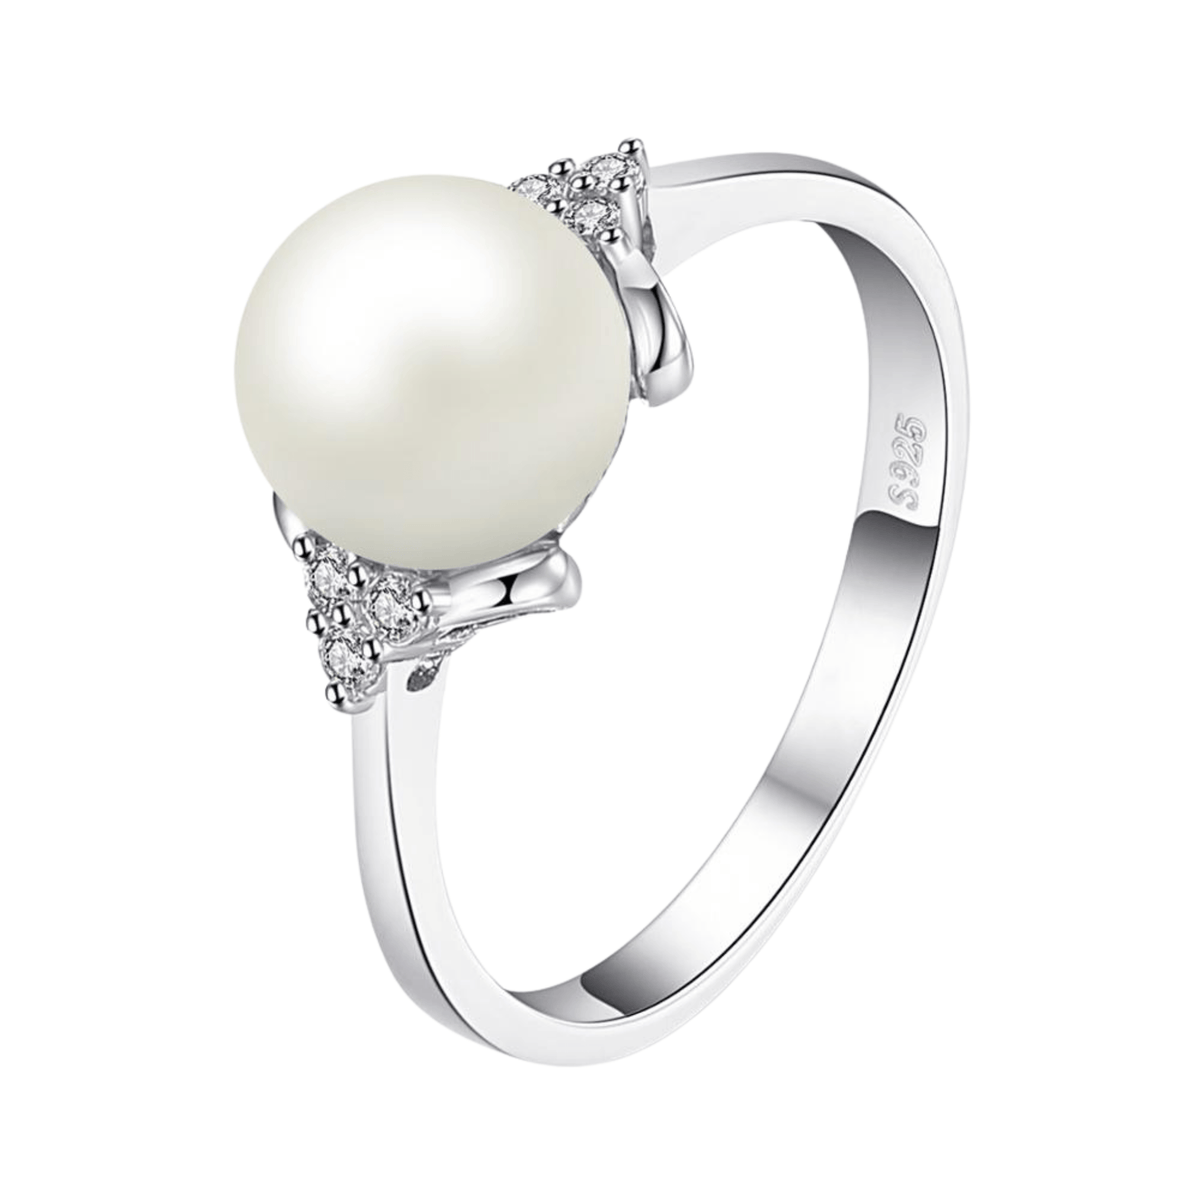 Ring Perle mit weißen Steinen silber Schmuck Pearls Perlenring Perlenschmuck